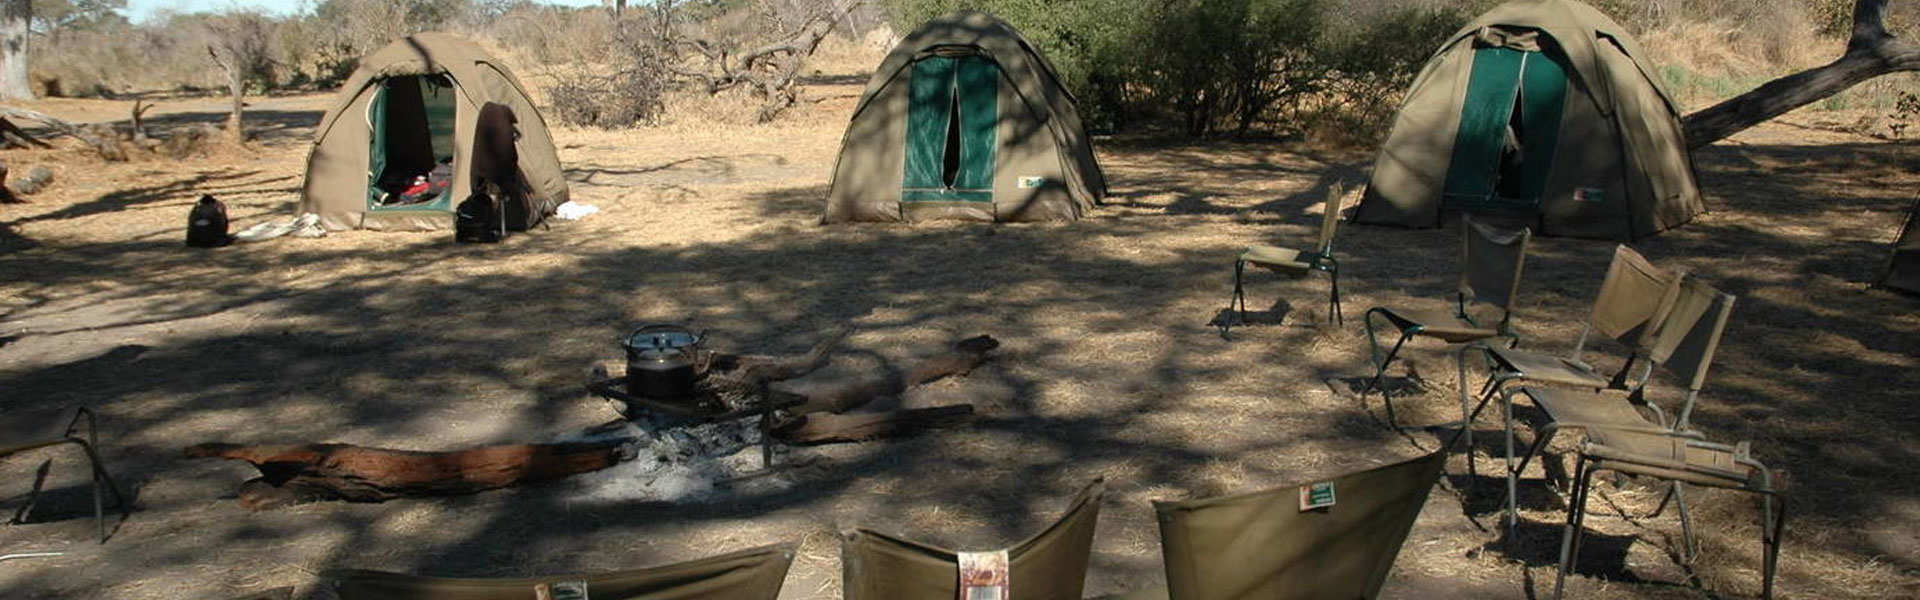 Tanzania Budget Camping Safari (Serengeti)